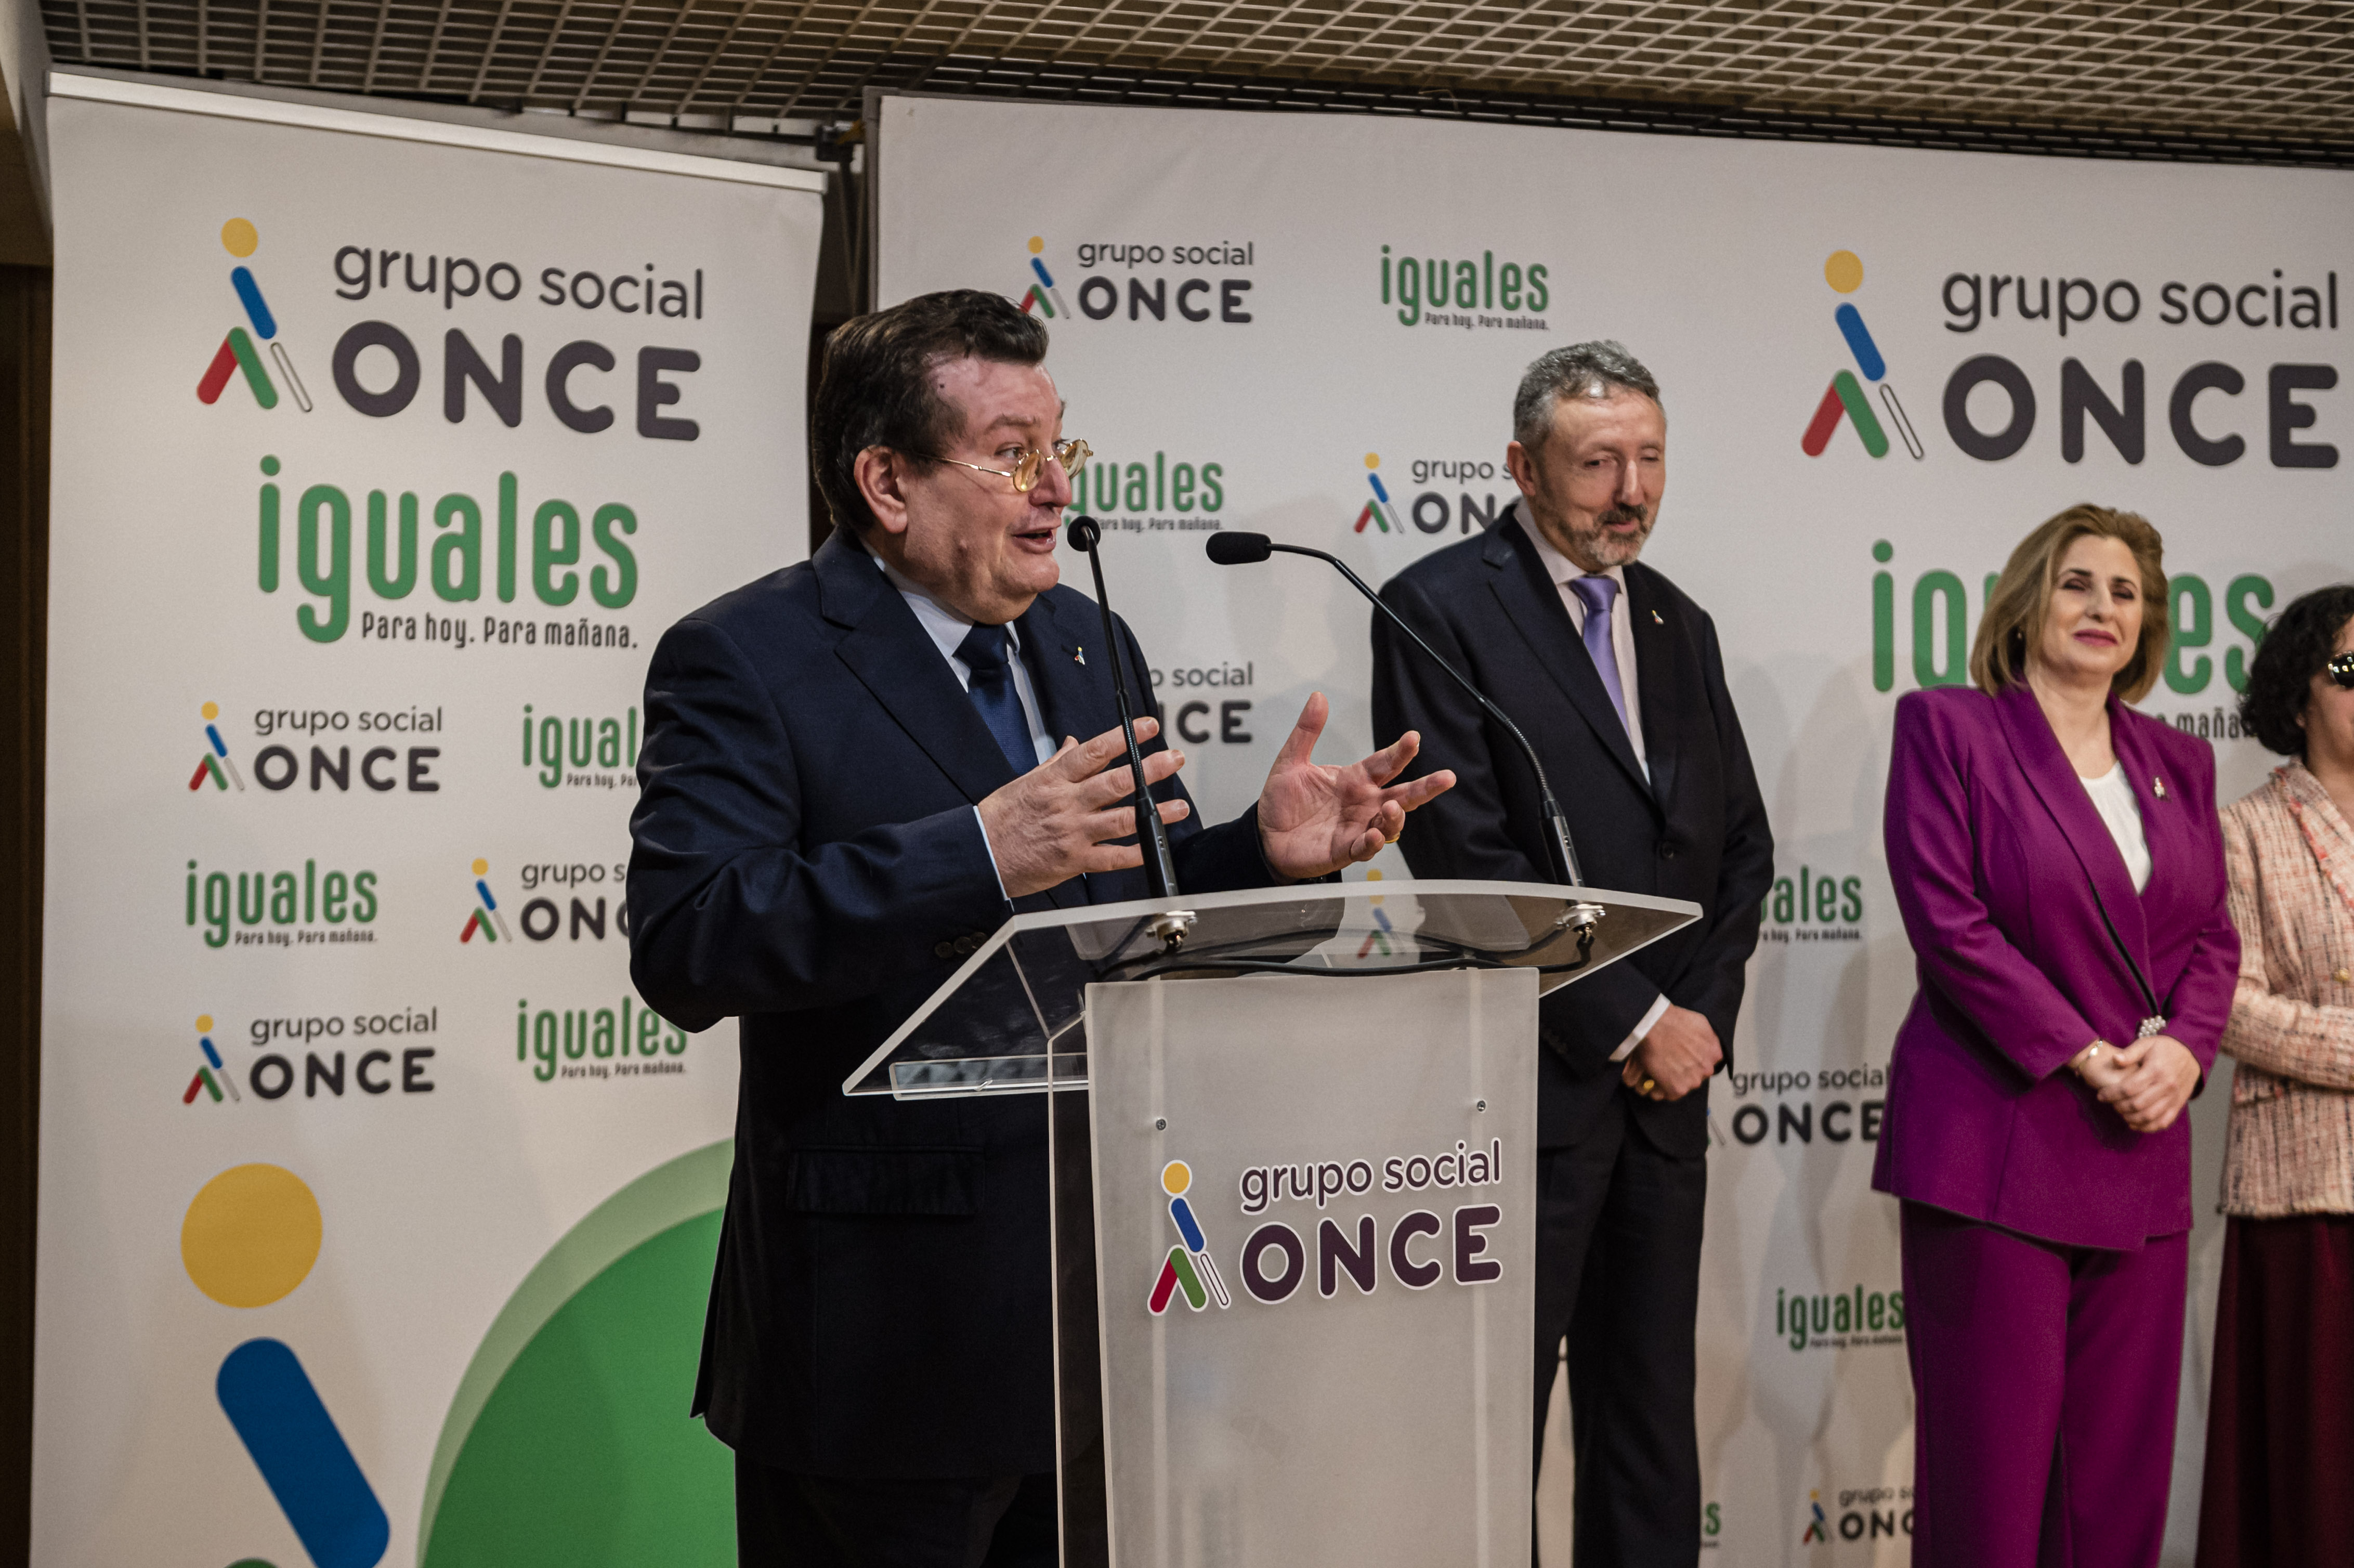 El director general de la ONCE, Ángel Sánchez, expresó subrayó el potencial de Andalucía dentro del Grupo Social ONCE